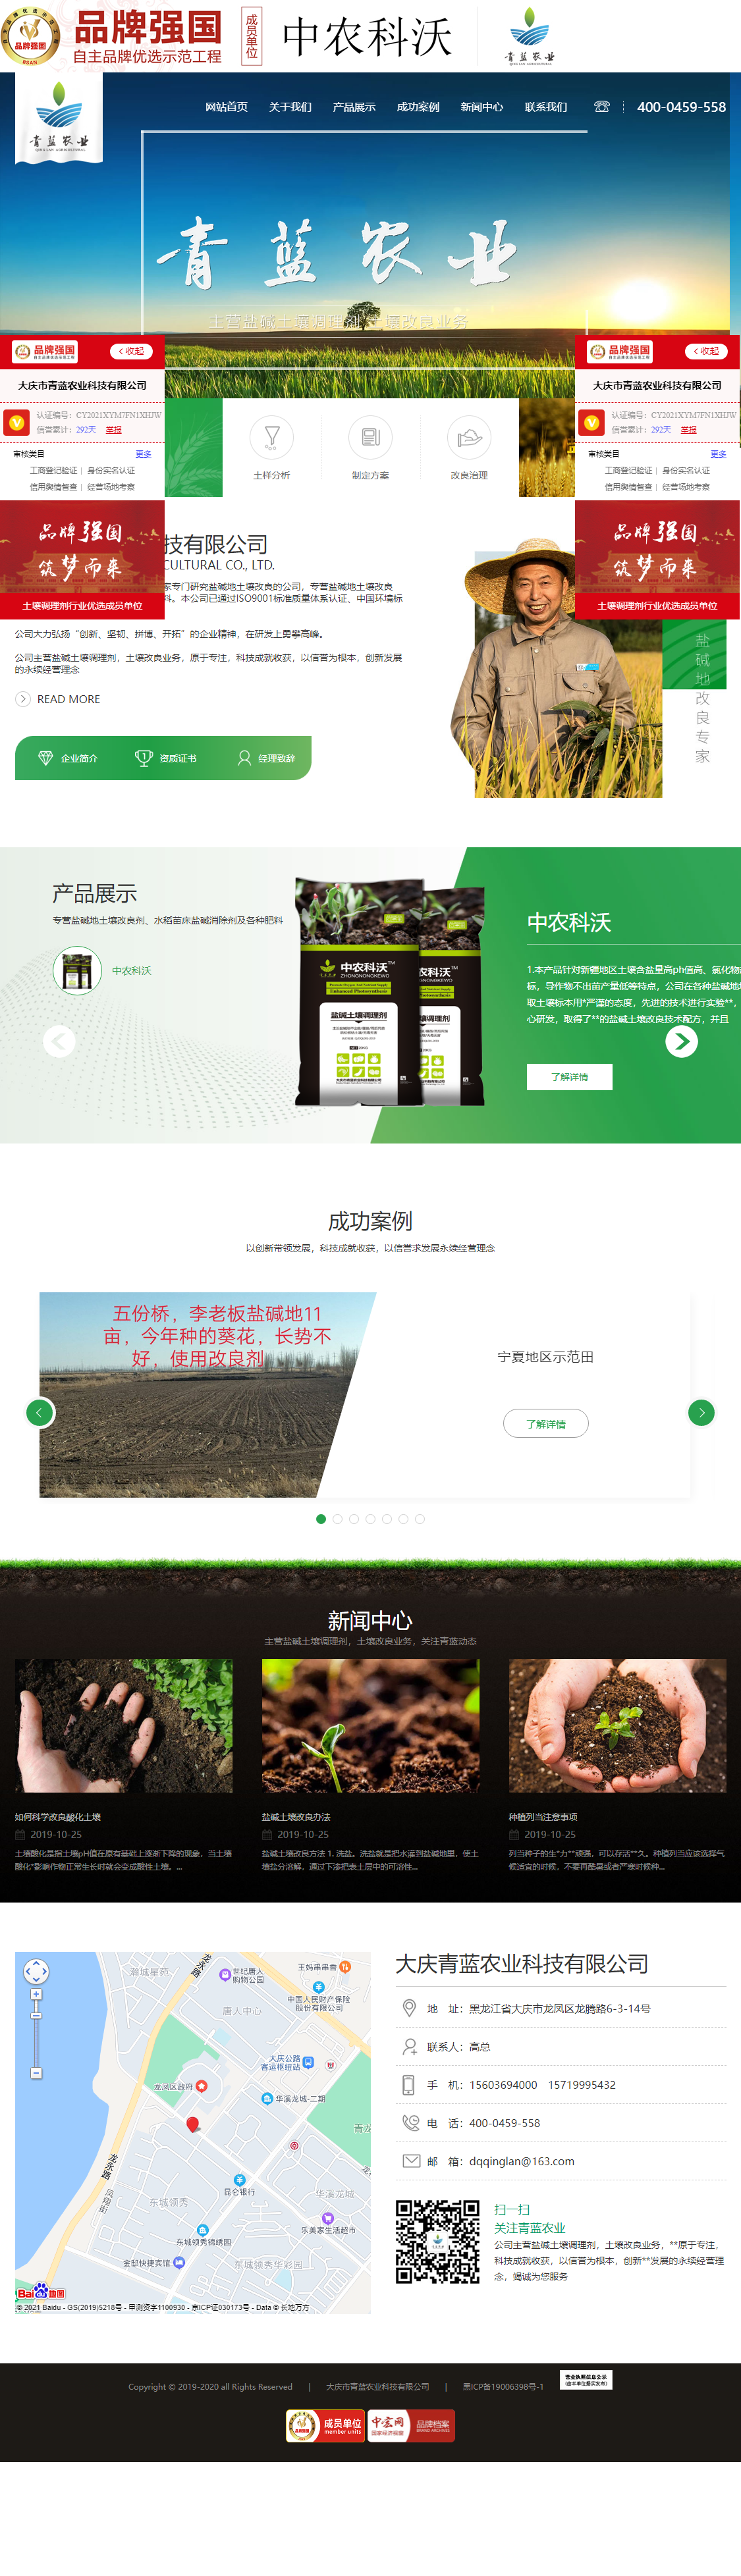 大庆市青蓝农业科技有限公司网站案例